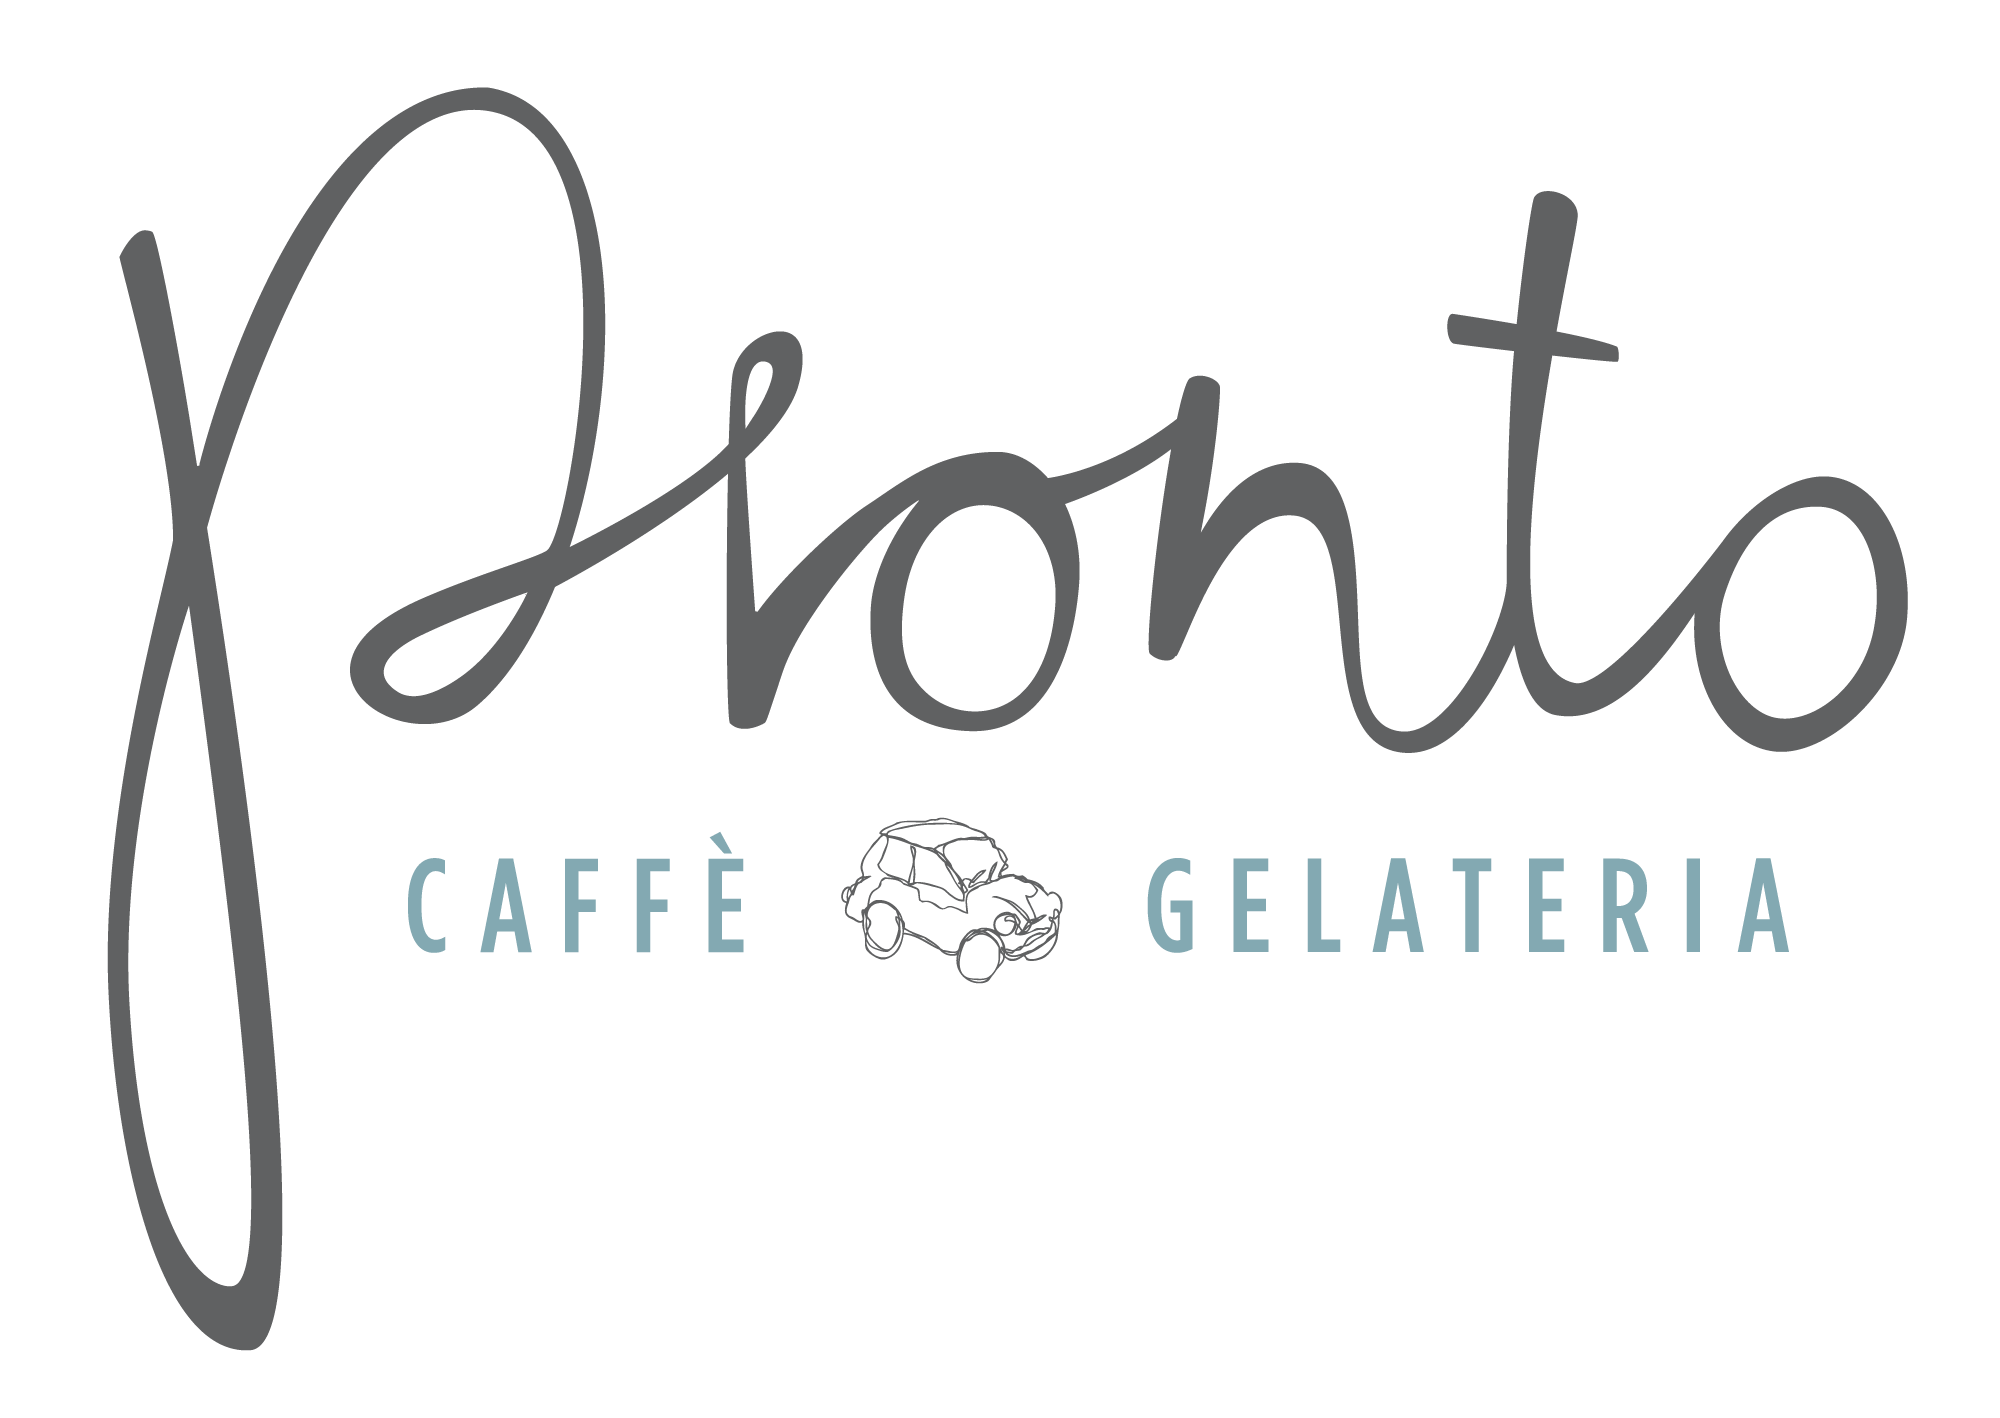 Pronto Caffe & Gelateria